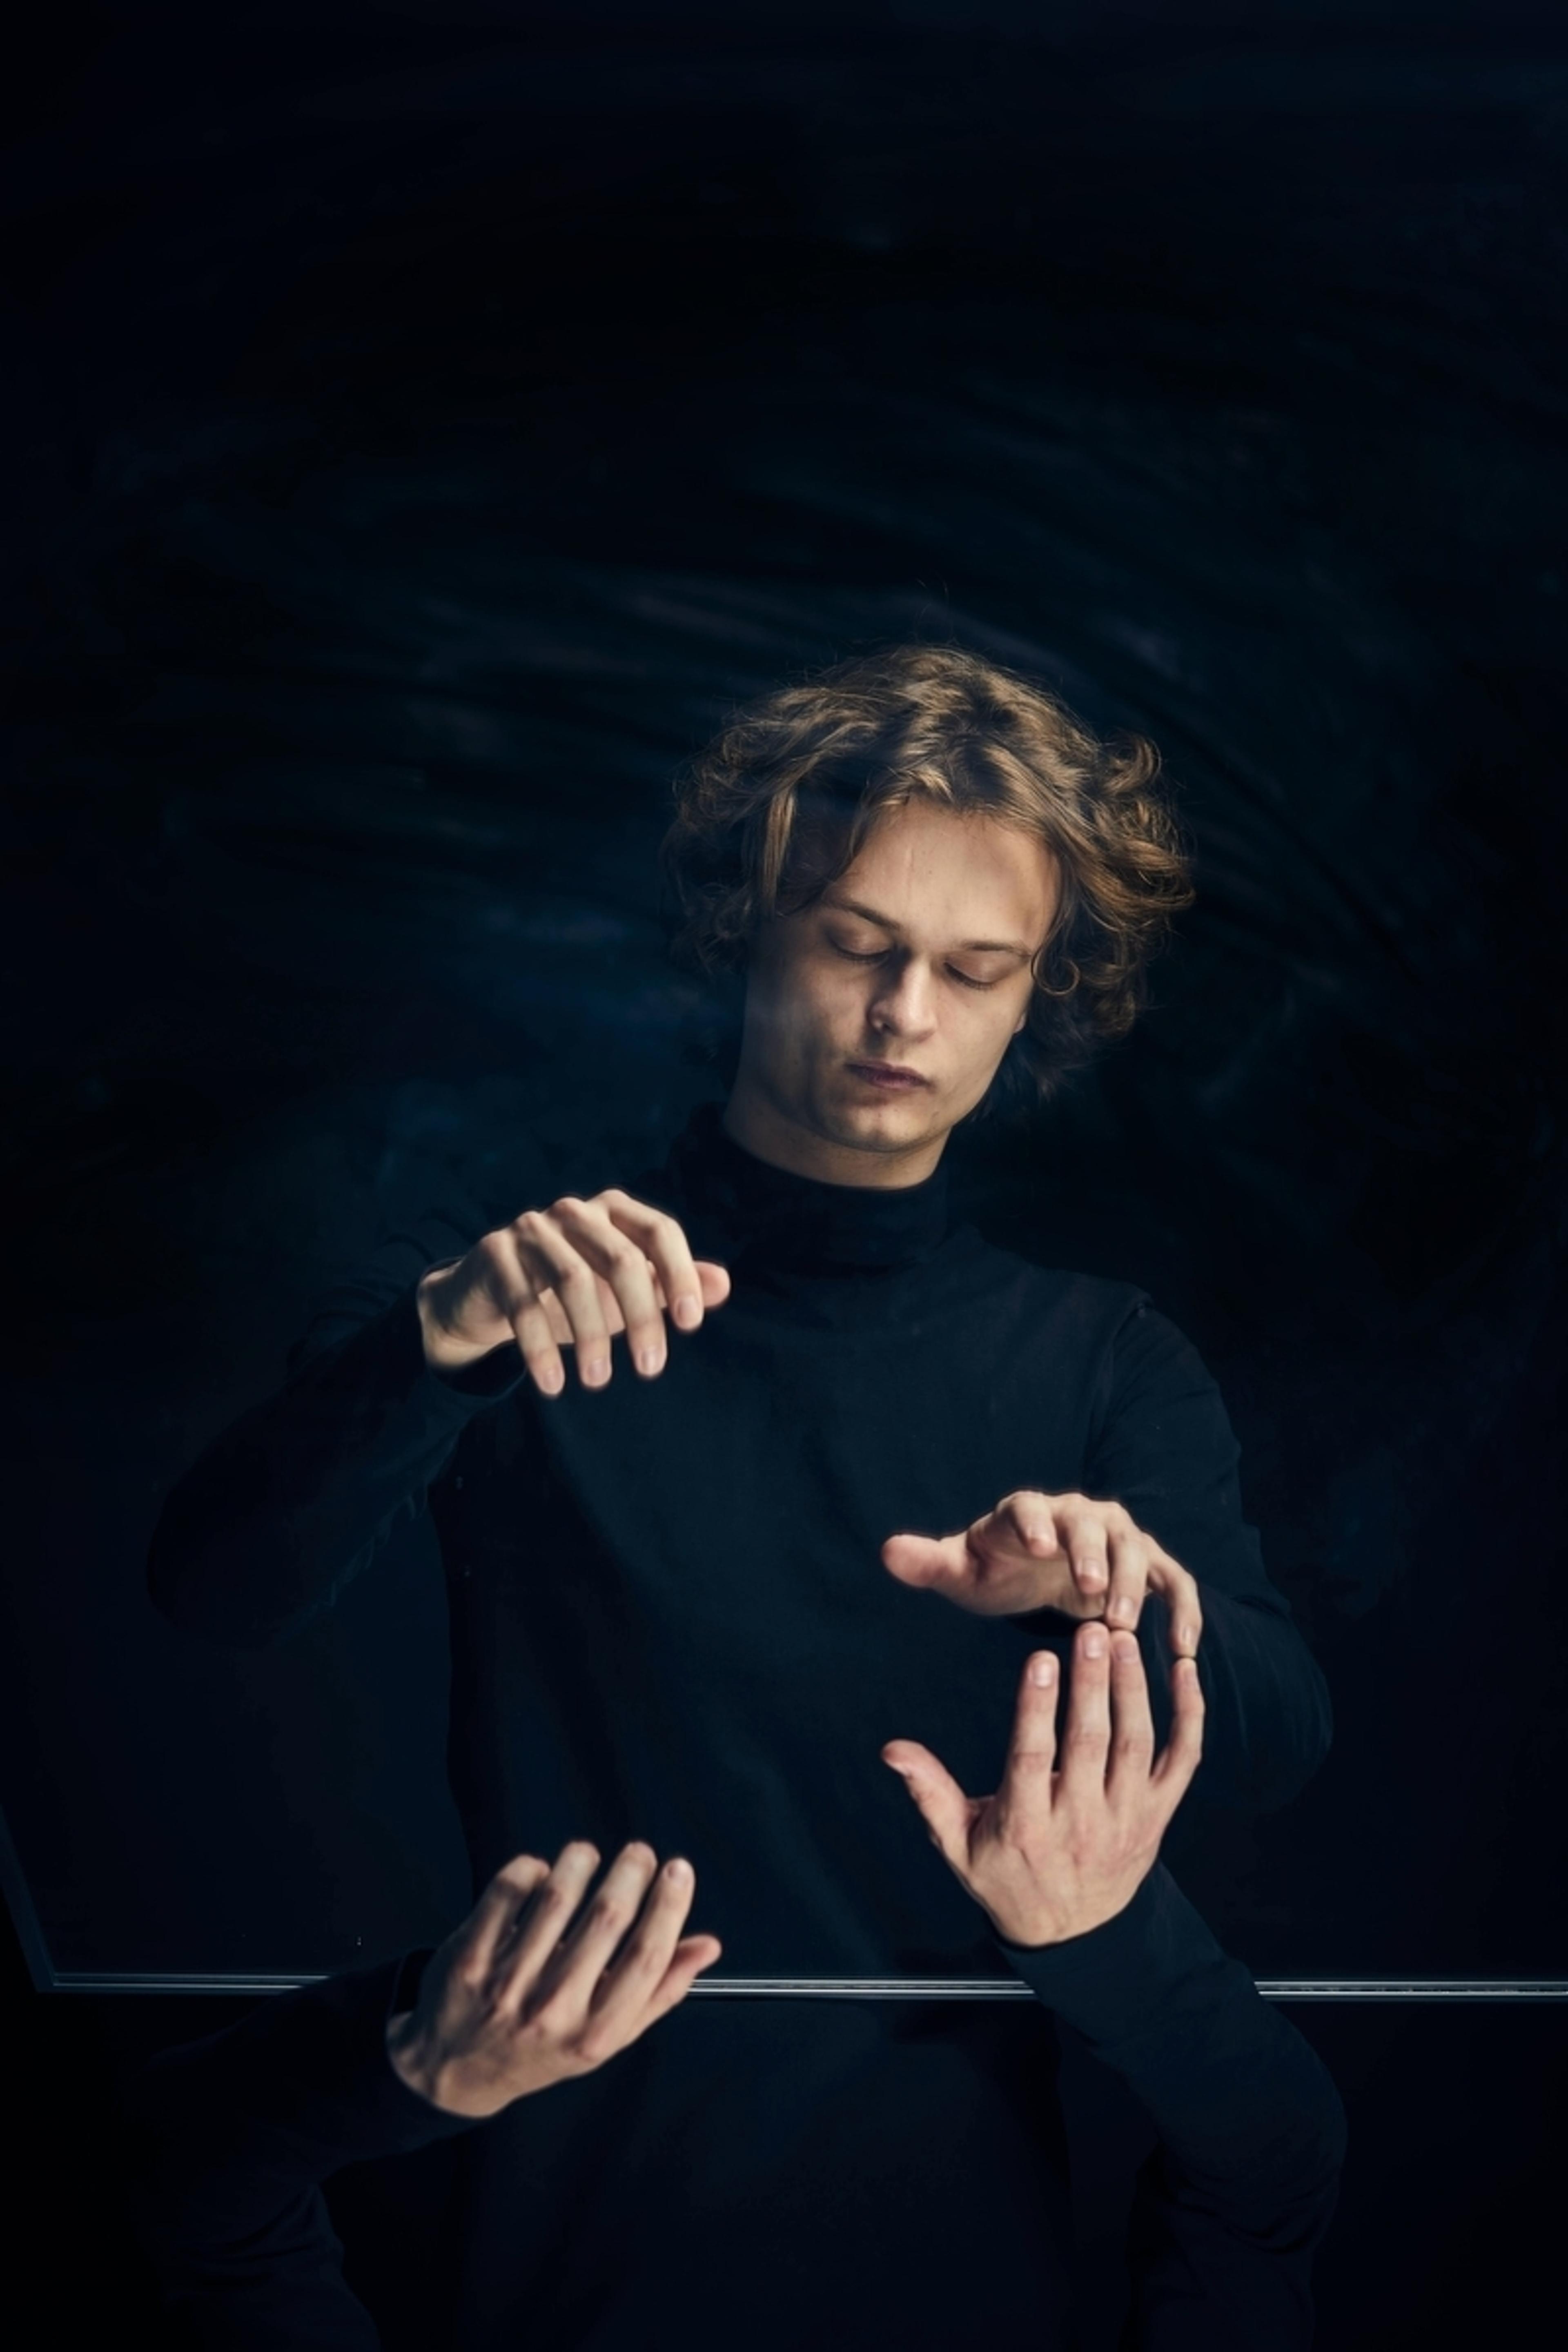 En ung mann gestikulerer med hendene, som han spiller på piano. Han er kledd i sort, mot en sort bakgrunn.